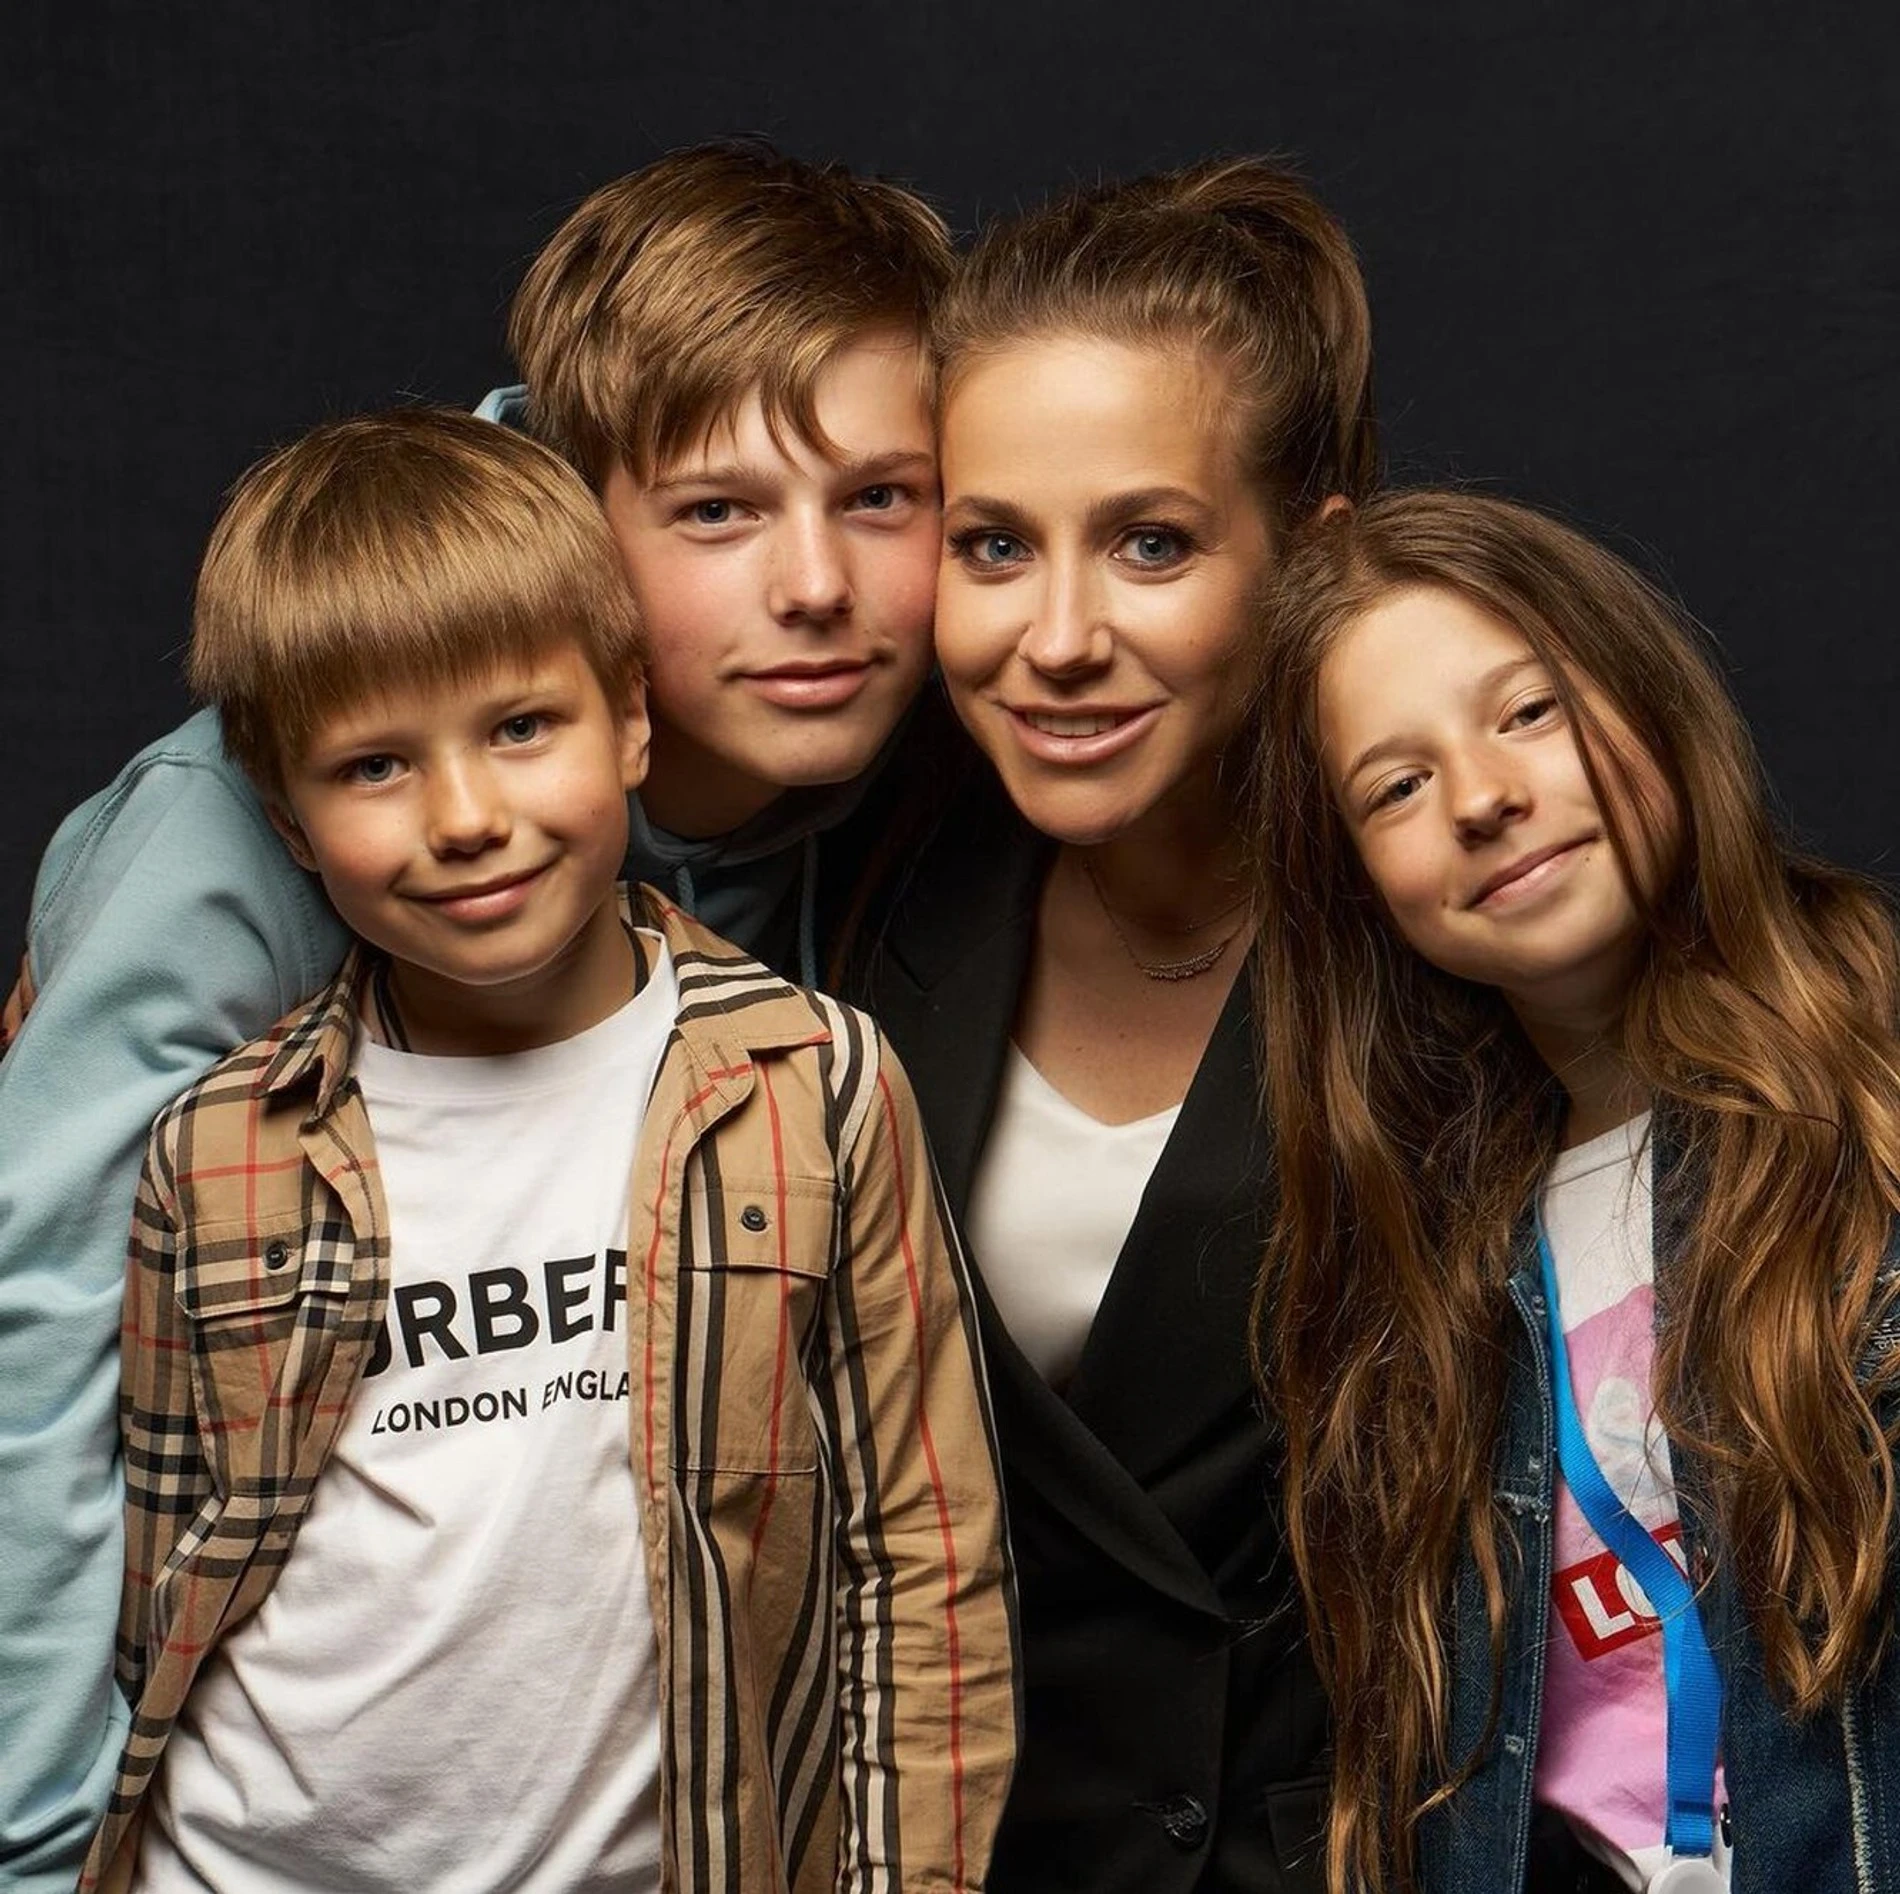 Юлия Барановская с детьми
Фото: paparazzi.ru